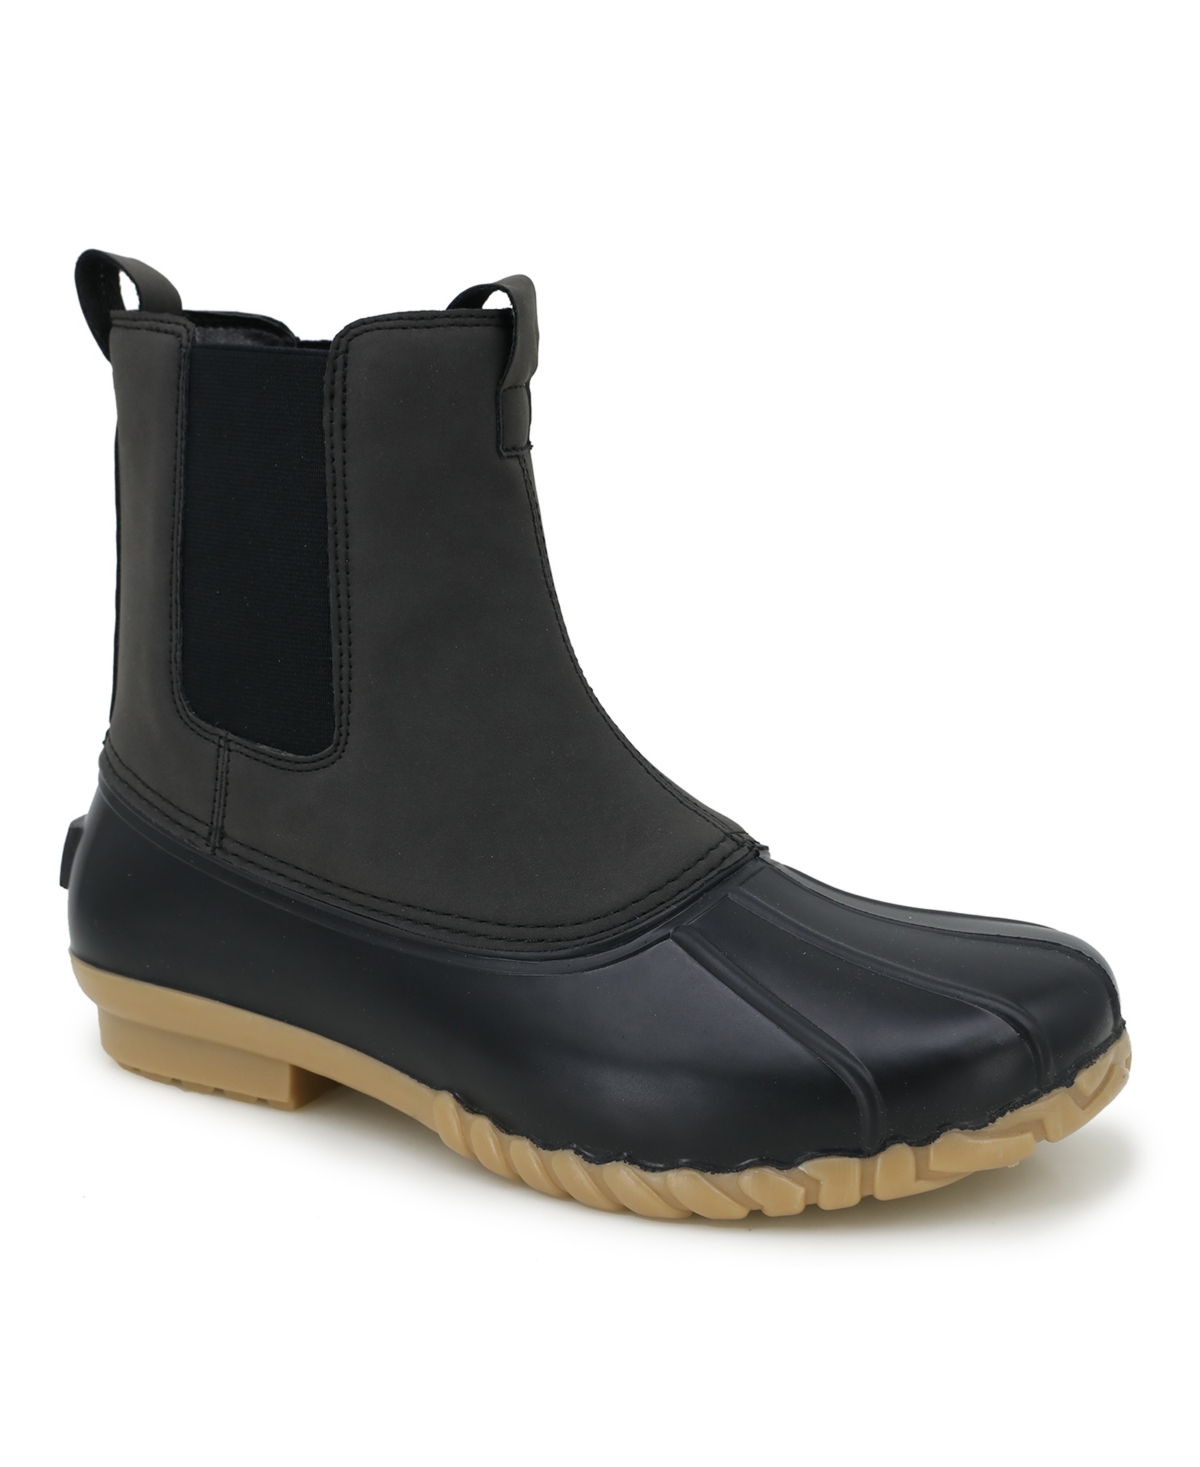 Men's Milton Water-Resistant Duck Boot - Black, Gray